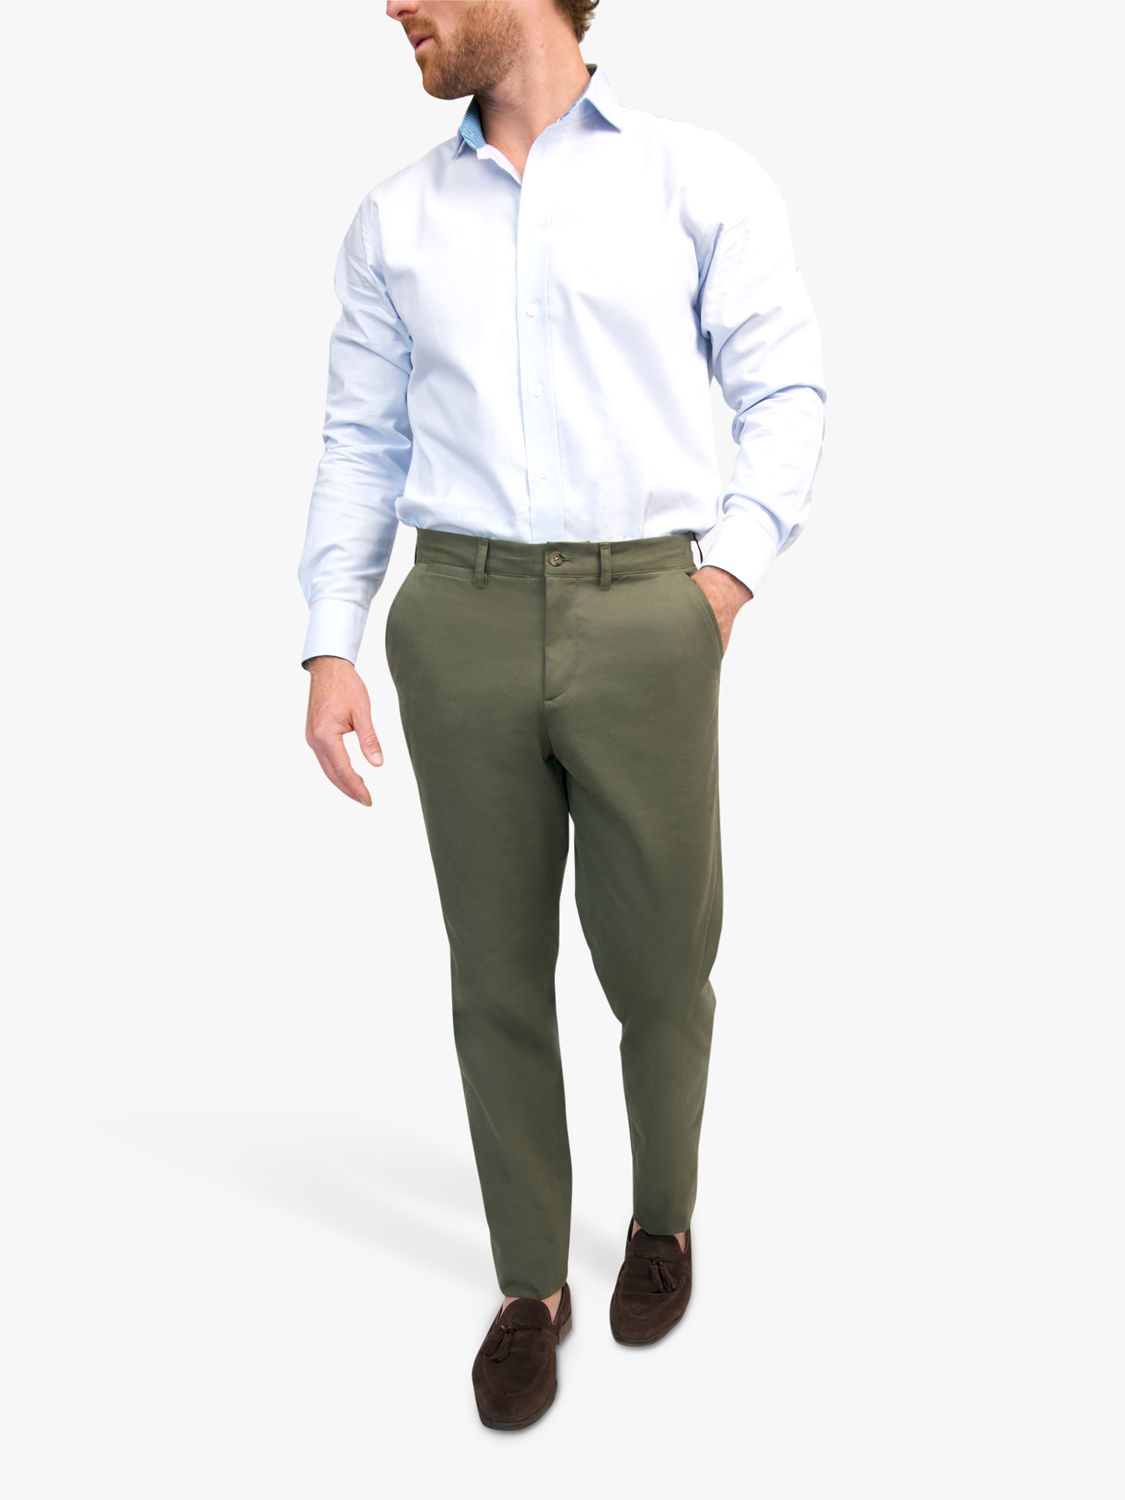 KOY Slim Chinos Trousers, Khaki, 34R